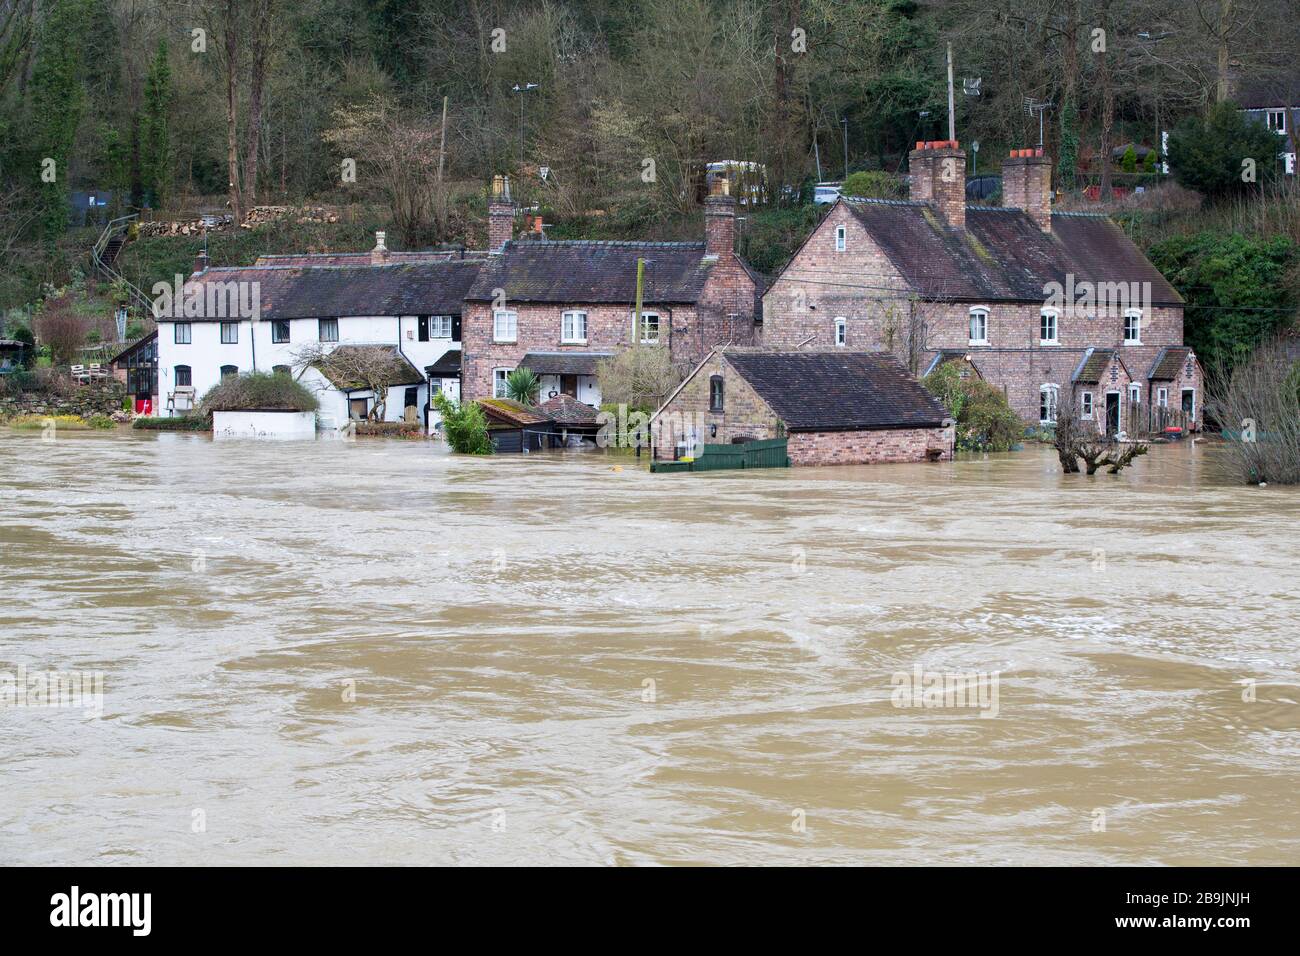 Überschwemmte Häuser in Ironbridge in Shropshire, wo der Fluss Severn nach dem nassesten Februar in Großbritannien, Febr, unter starken Hochwasserbedingungen stand Stockfoto